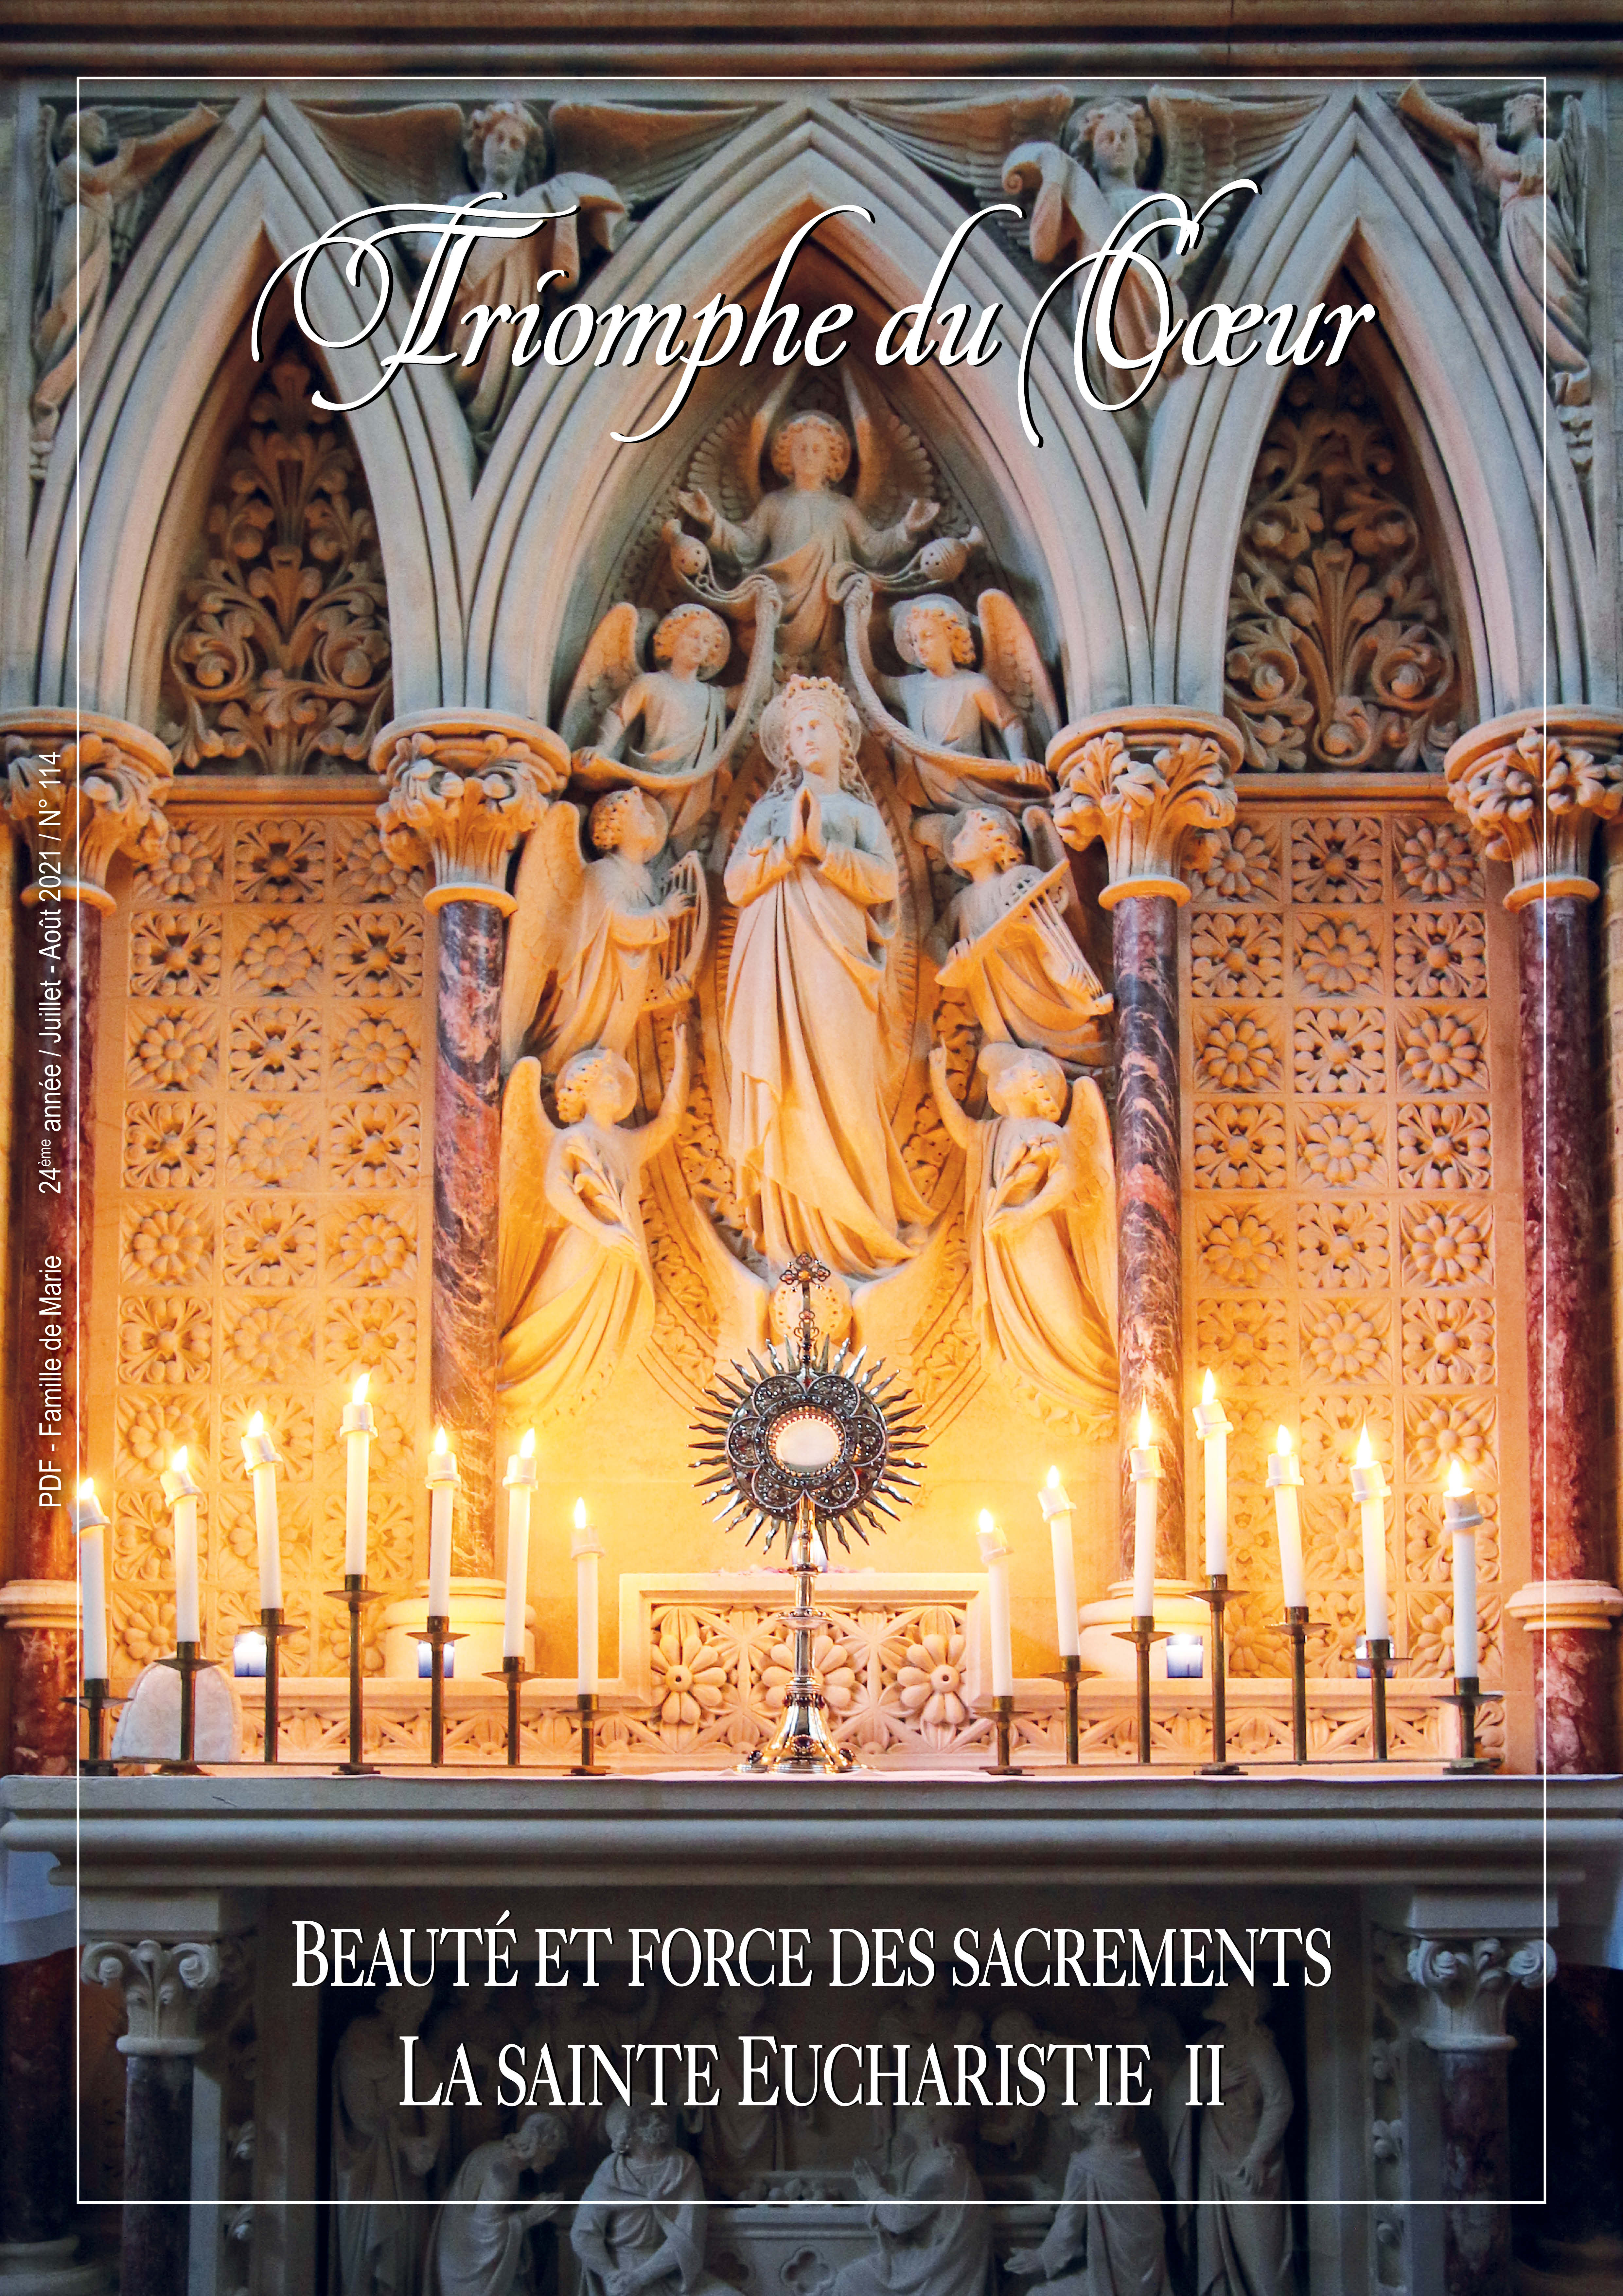 Beauté et force des sacrements - La sainte Eucharistie II